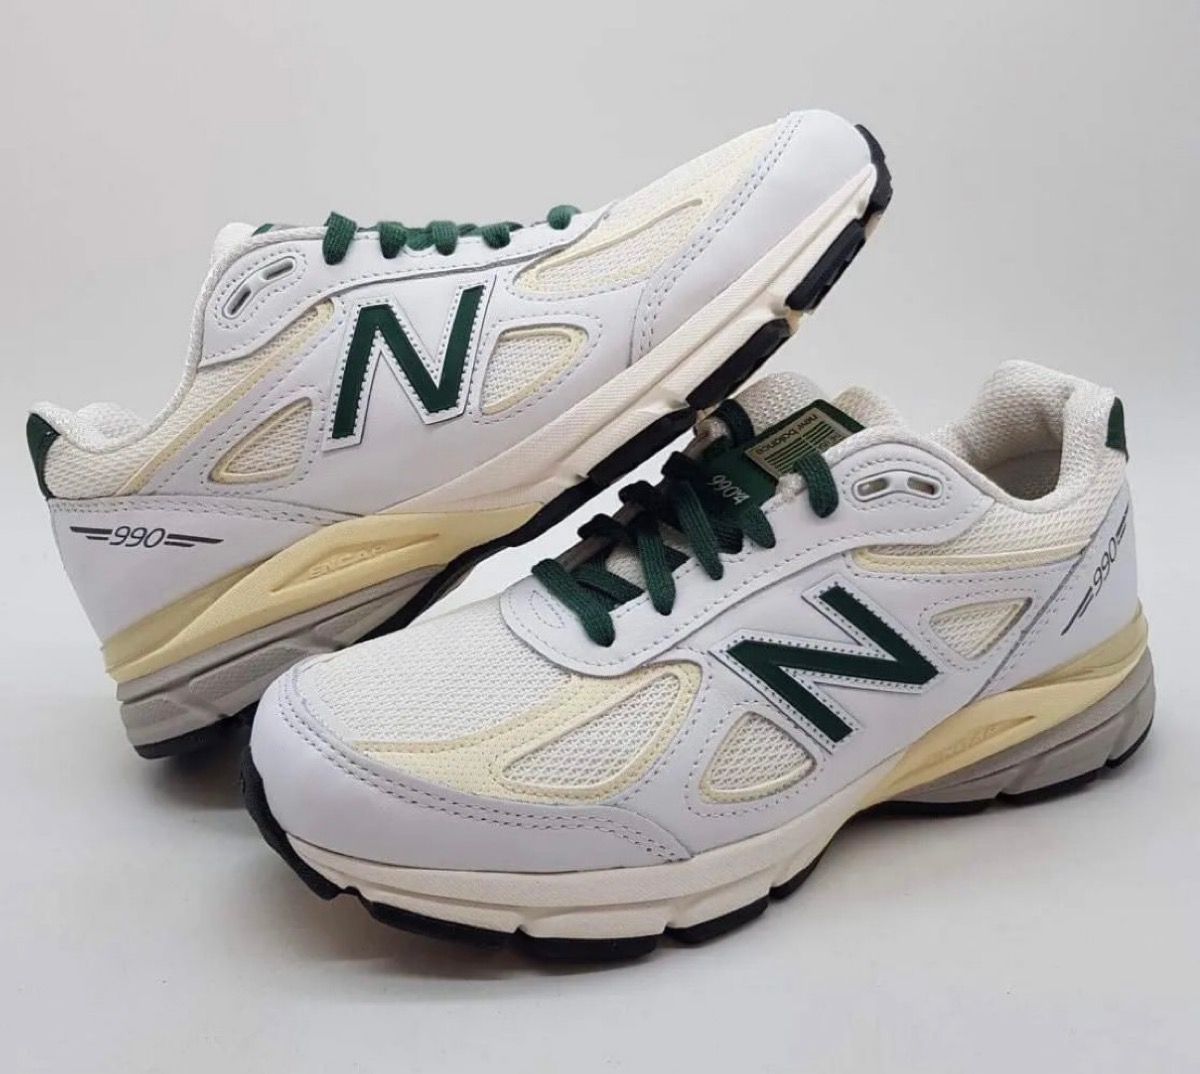 New Balance 990V4 "White/Green"